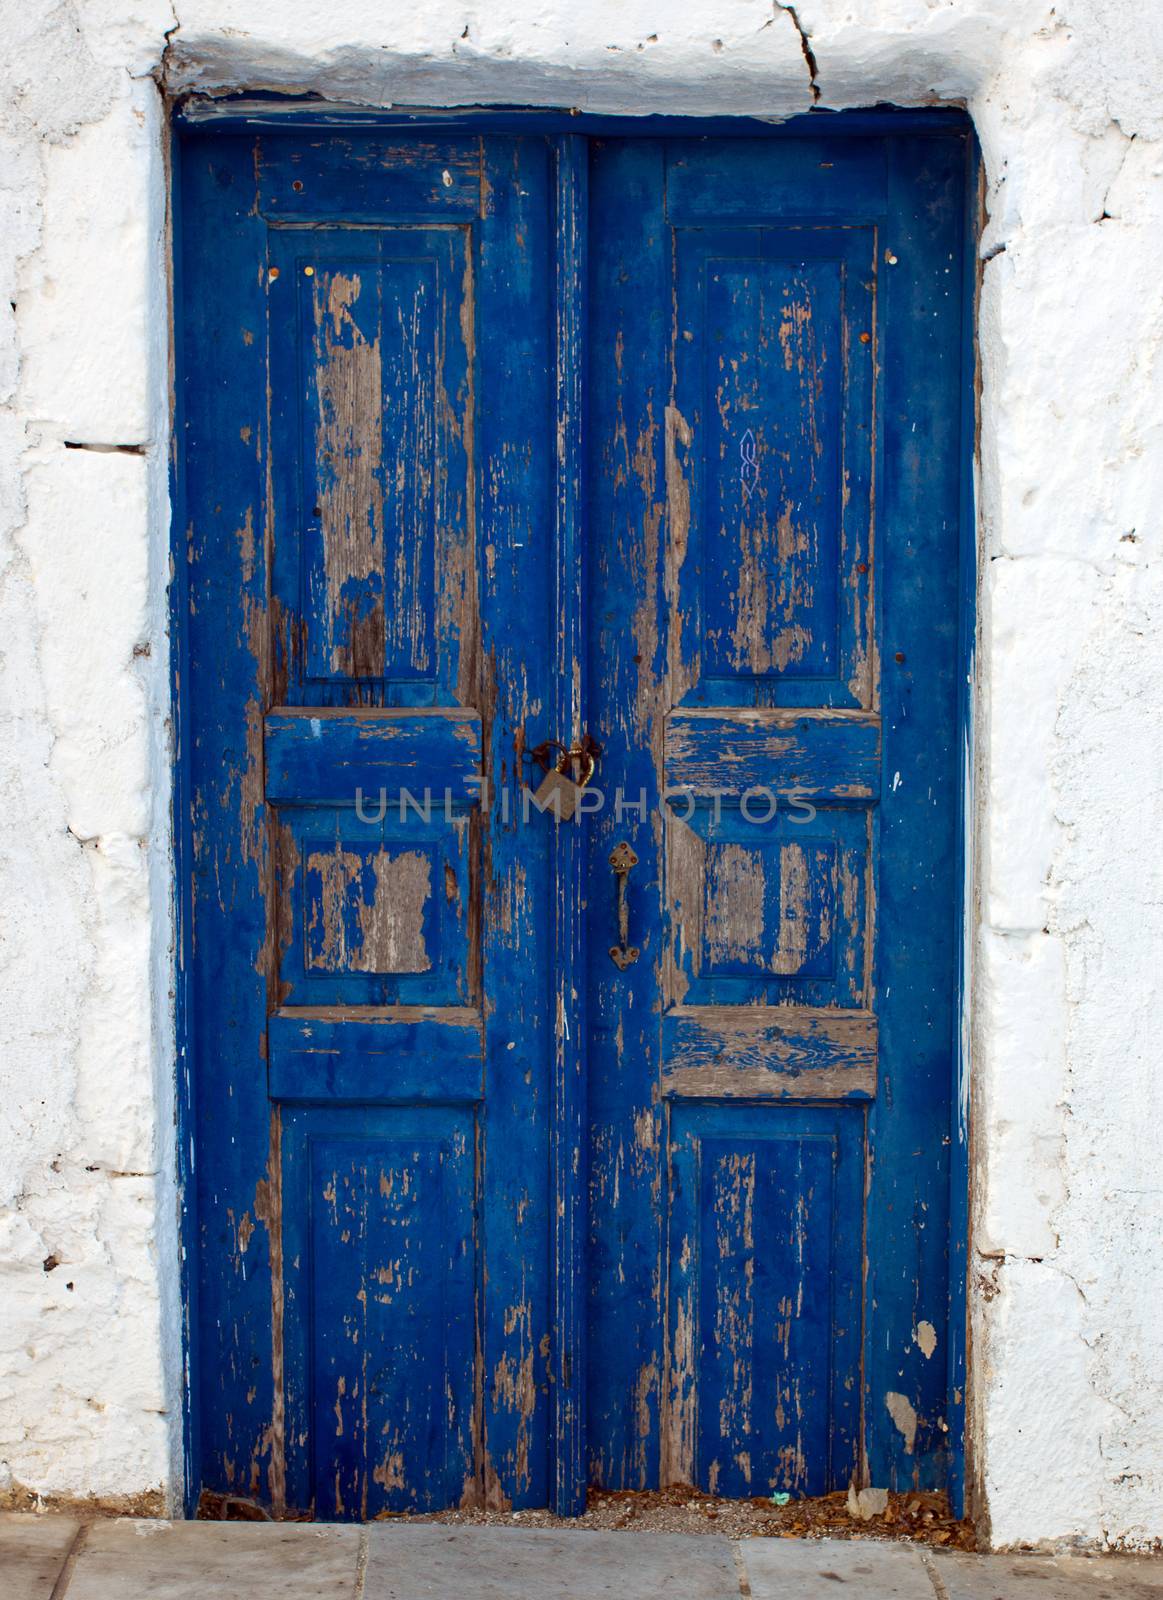 A blue door seen on a Cyclade island